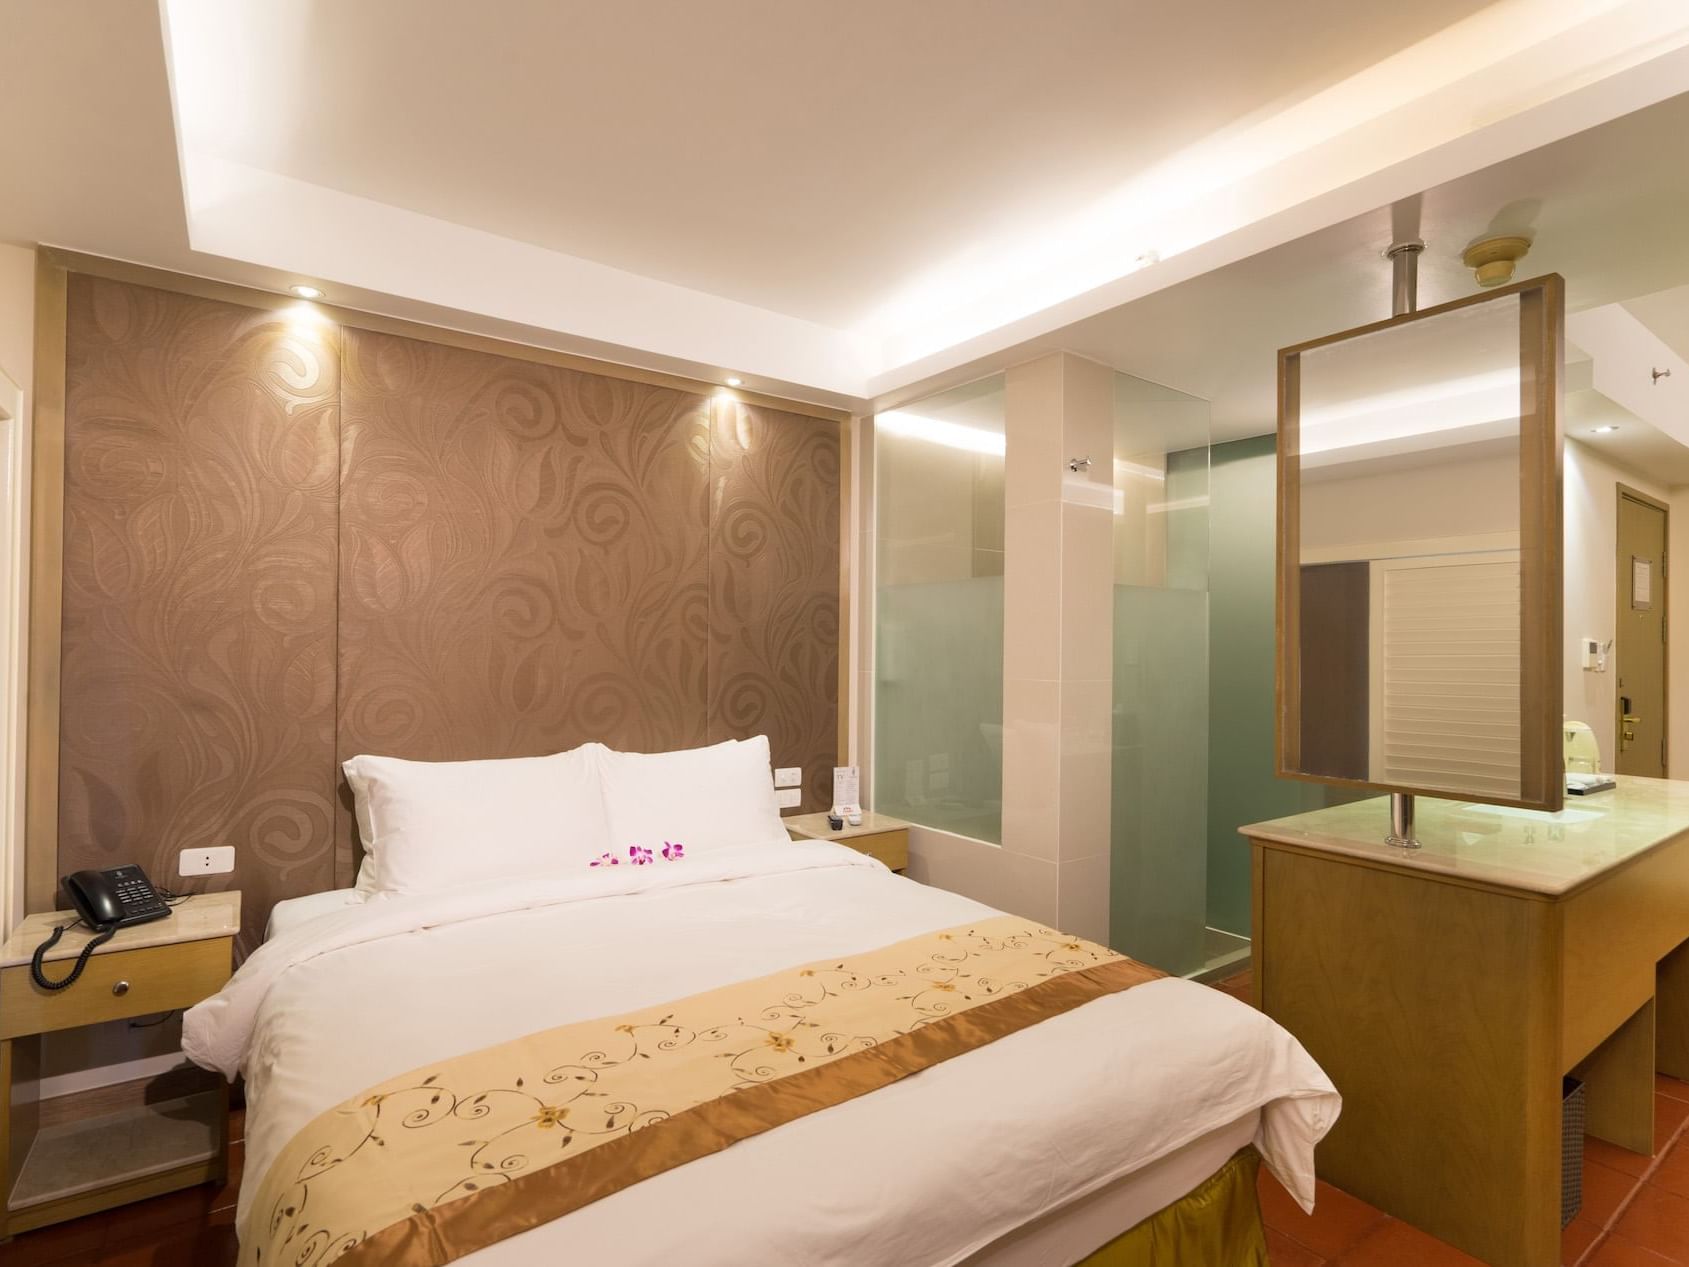 Studio Suite bedroom with mirror  at Empress Hotel Saigon   